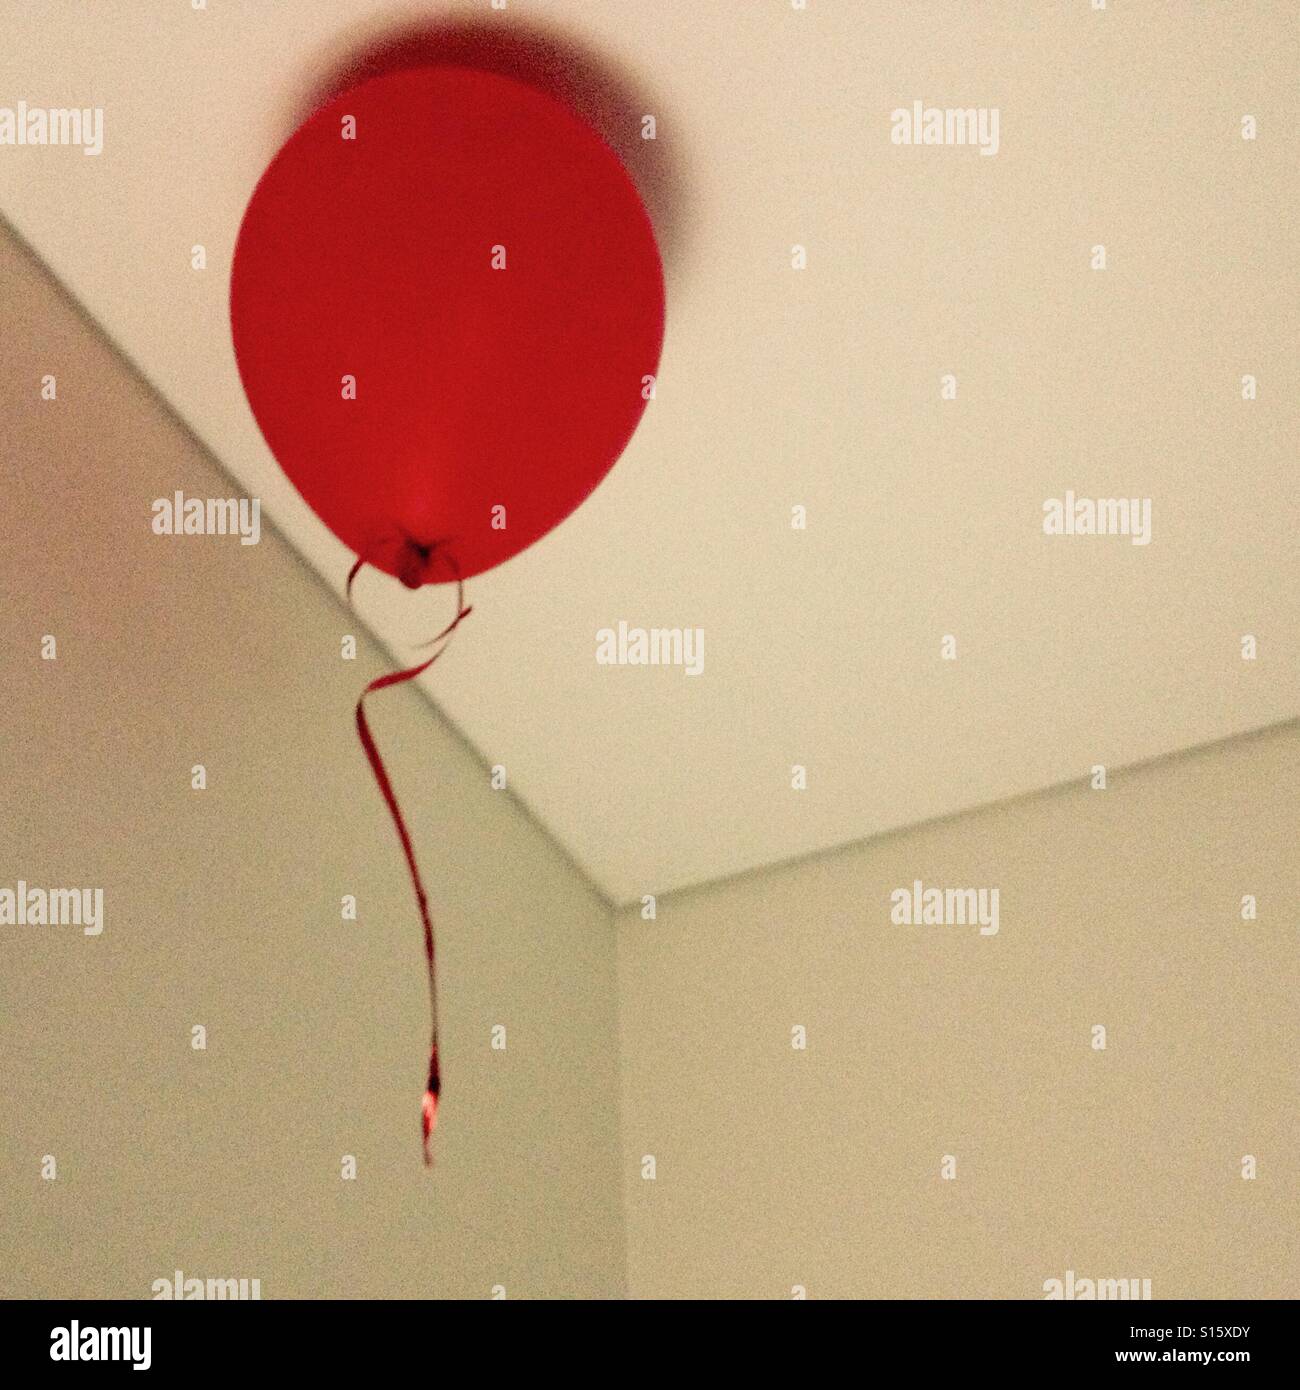 Ballon rouge en chambre pavillon (Melbourne, Australie) Banque D'Images